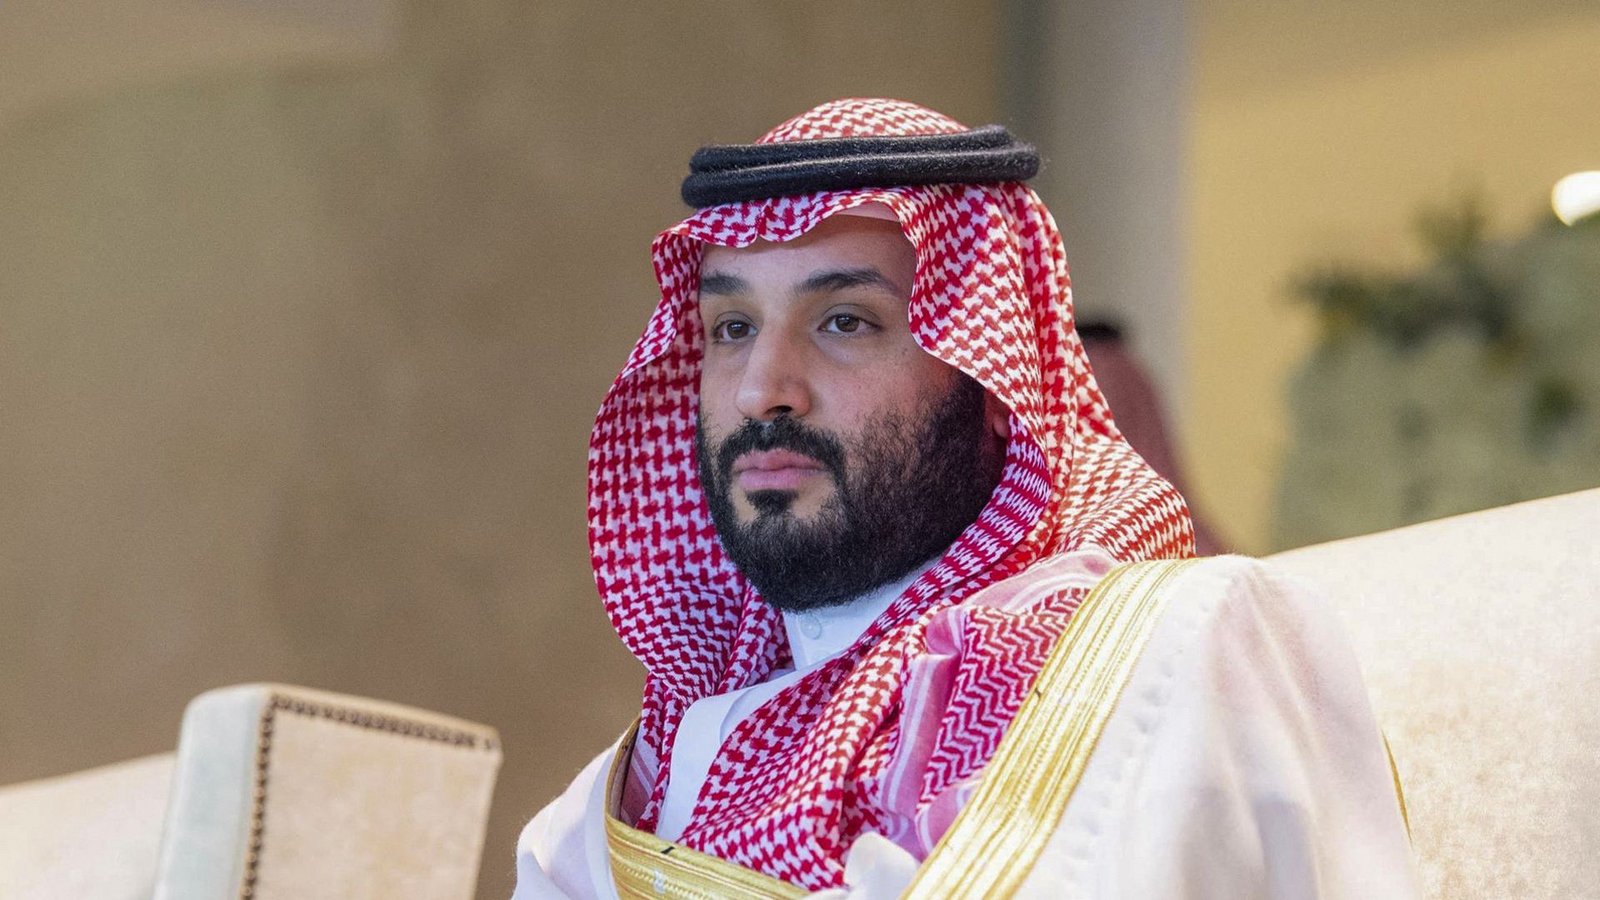 Kronprinz Mohammed bin Salman bemüht sich, das Image des gewissenlosen Gewaltherrschers loszuwerden.Foto: AFP